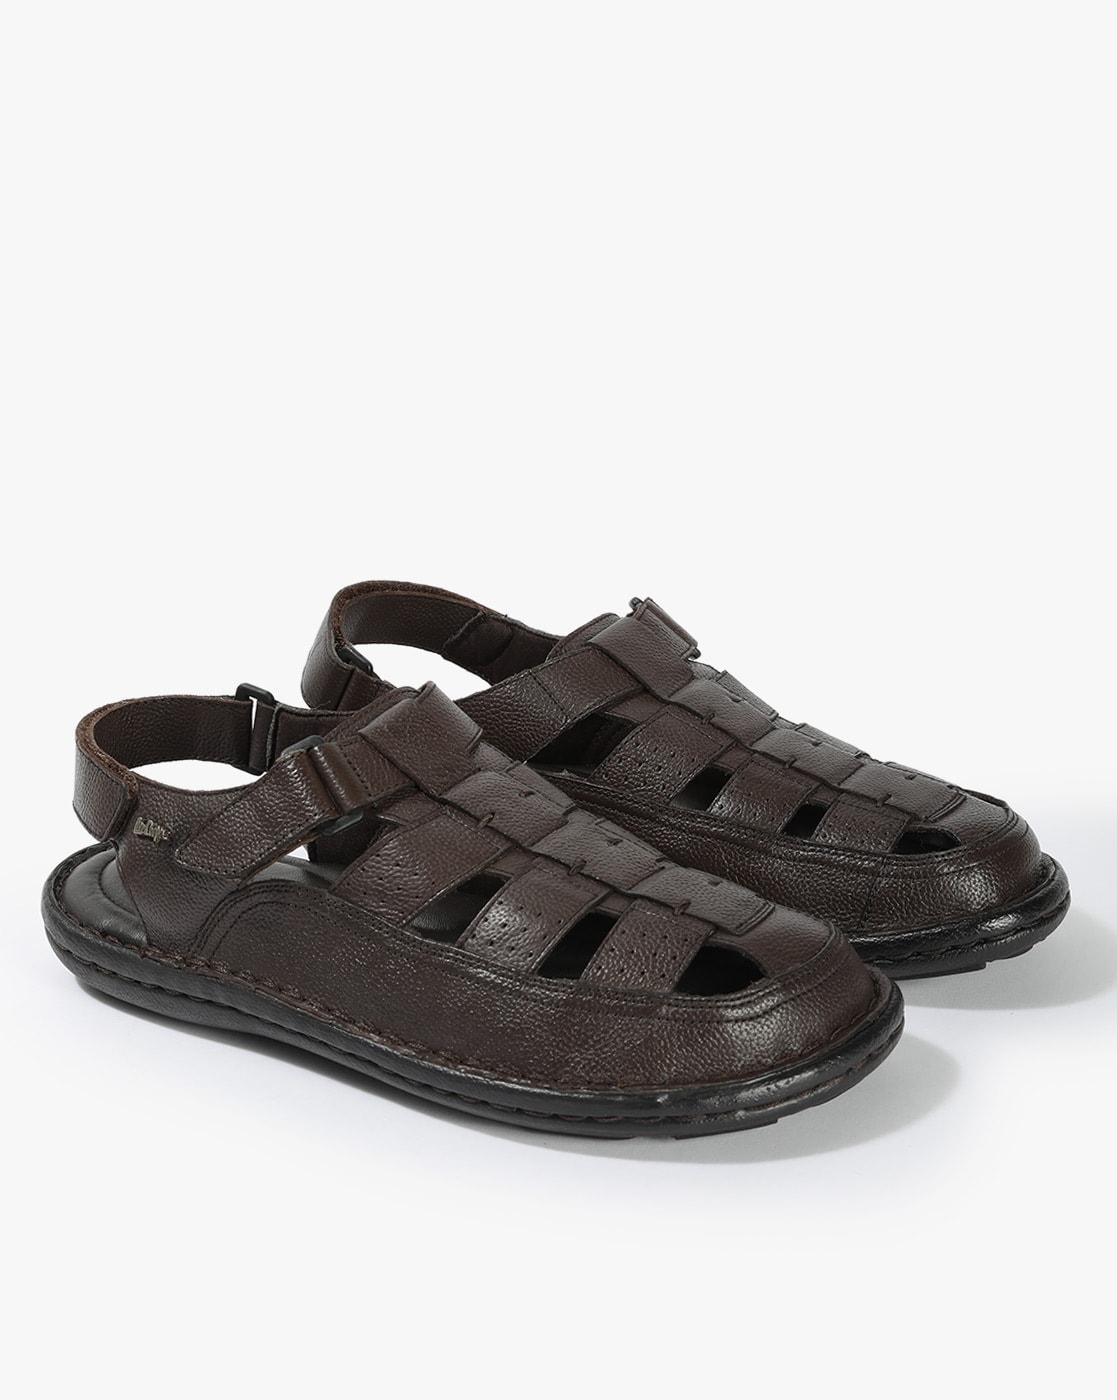 Buy Lee Cooper Mens Sandal LC4598B Online - Lulu Hypermarket India